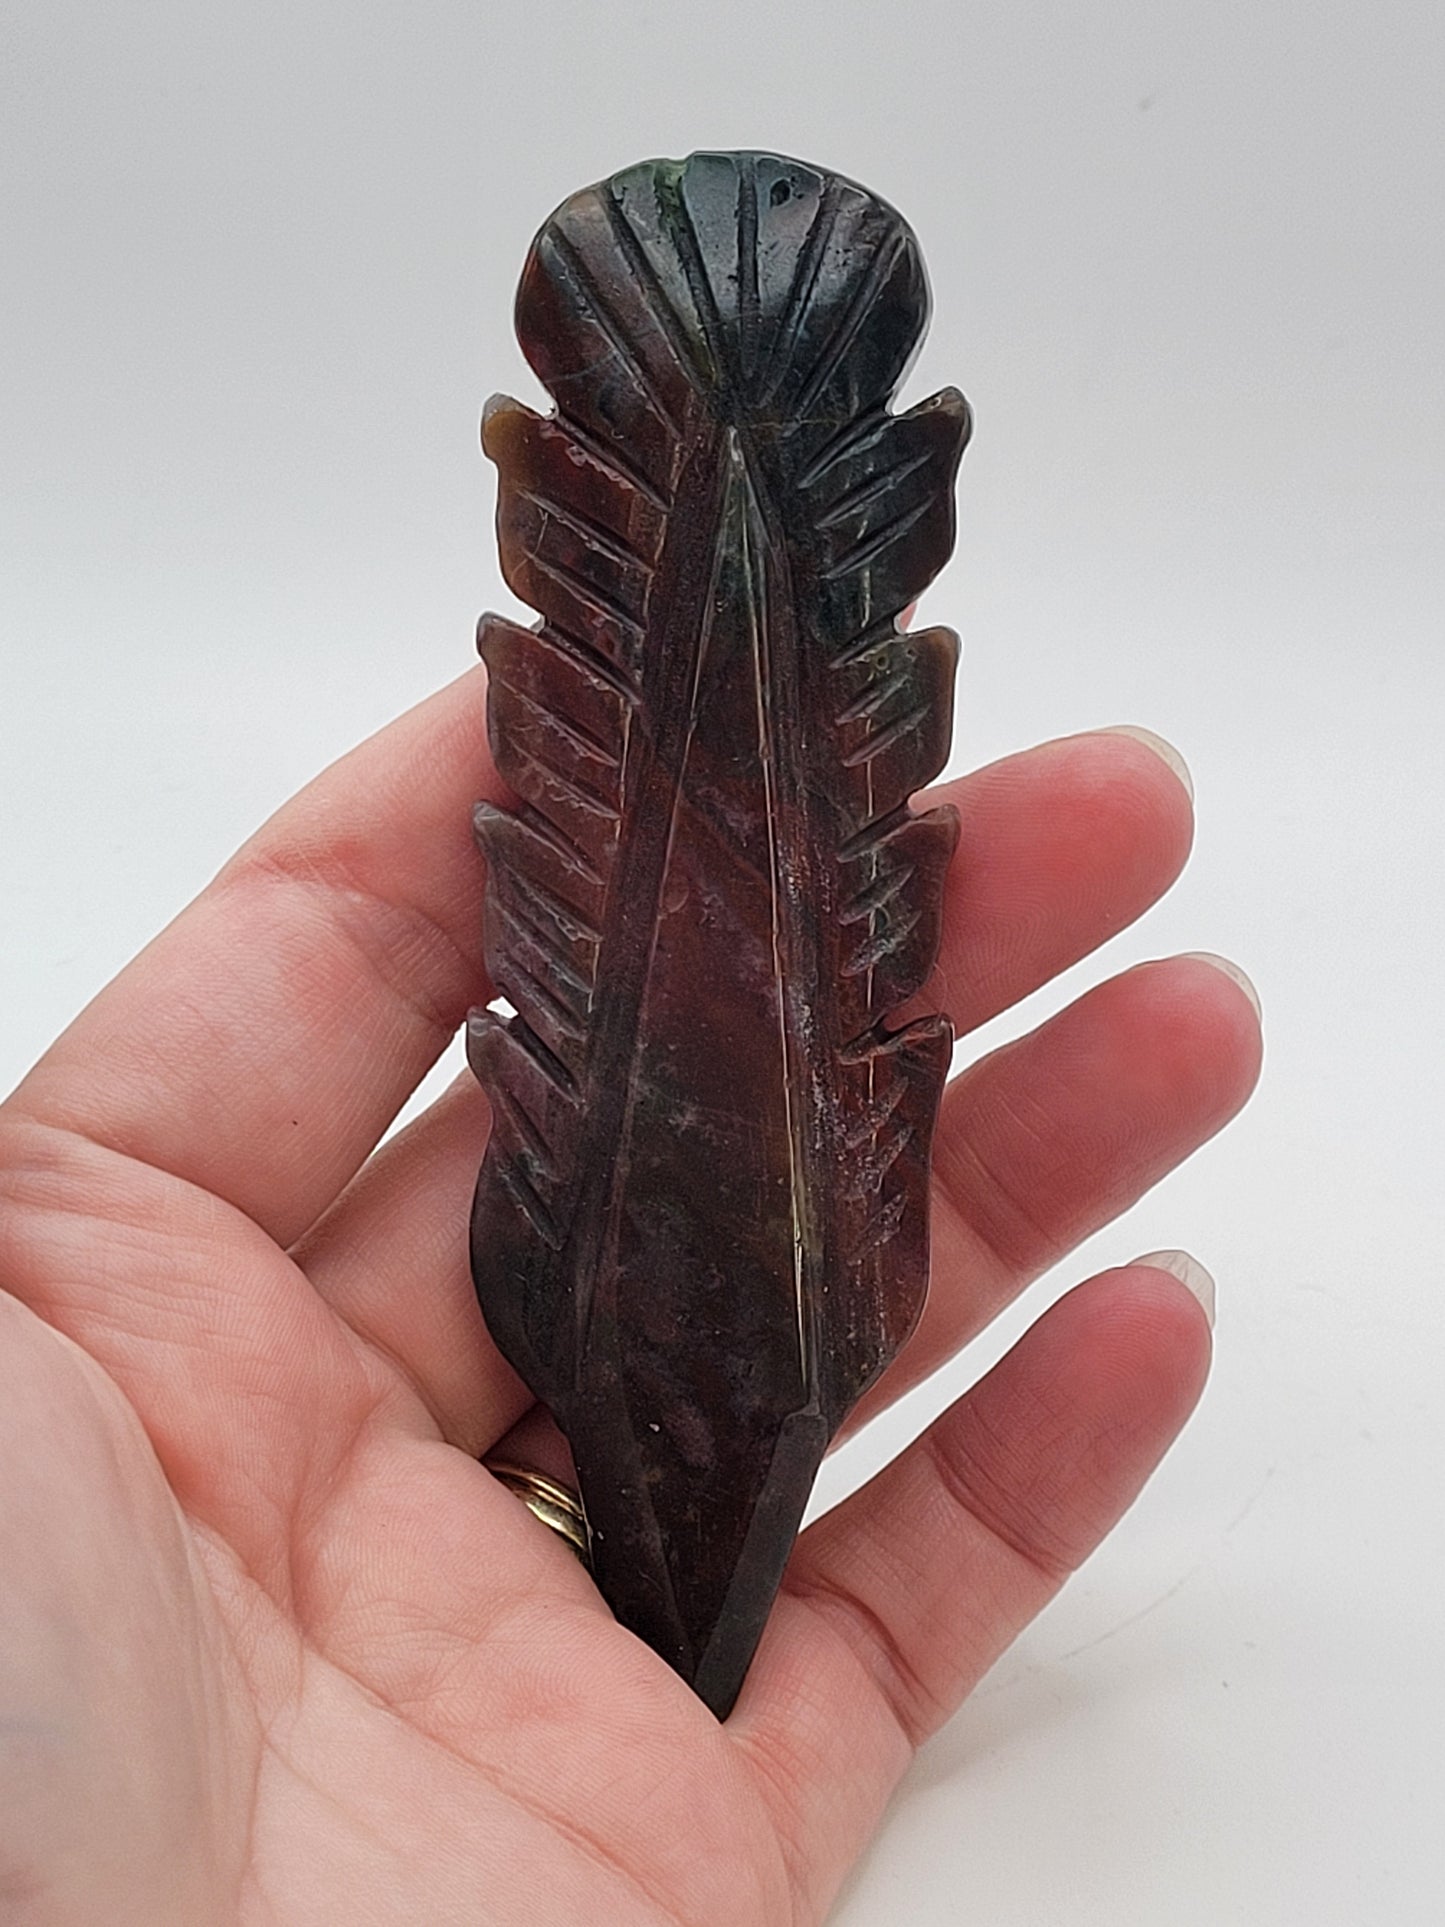 Feather carvings - Ocean Jasper